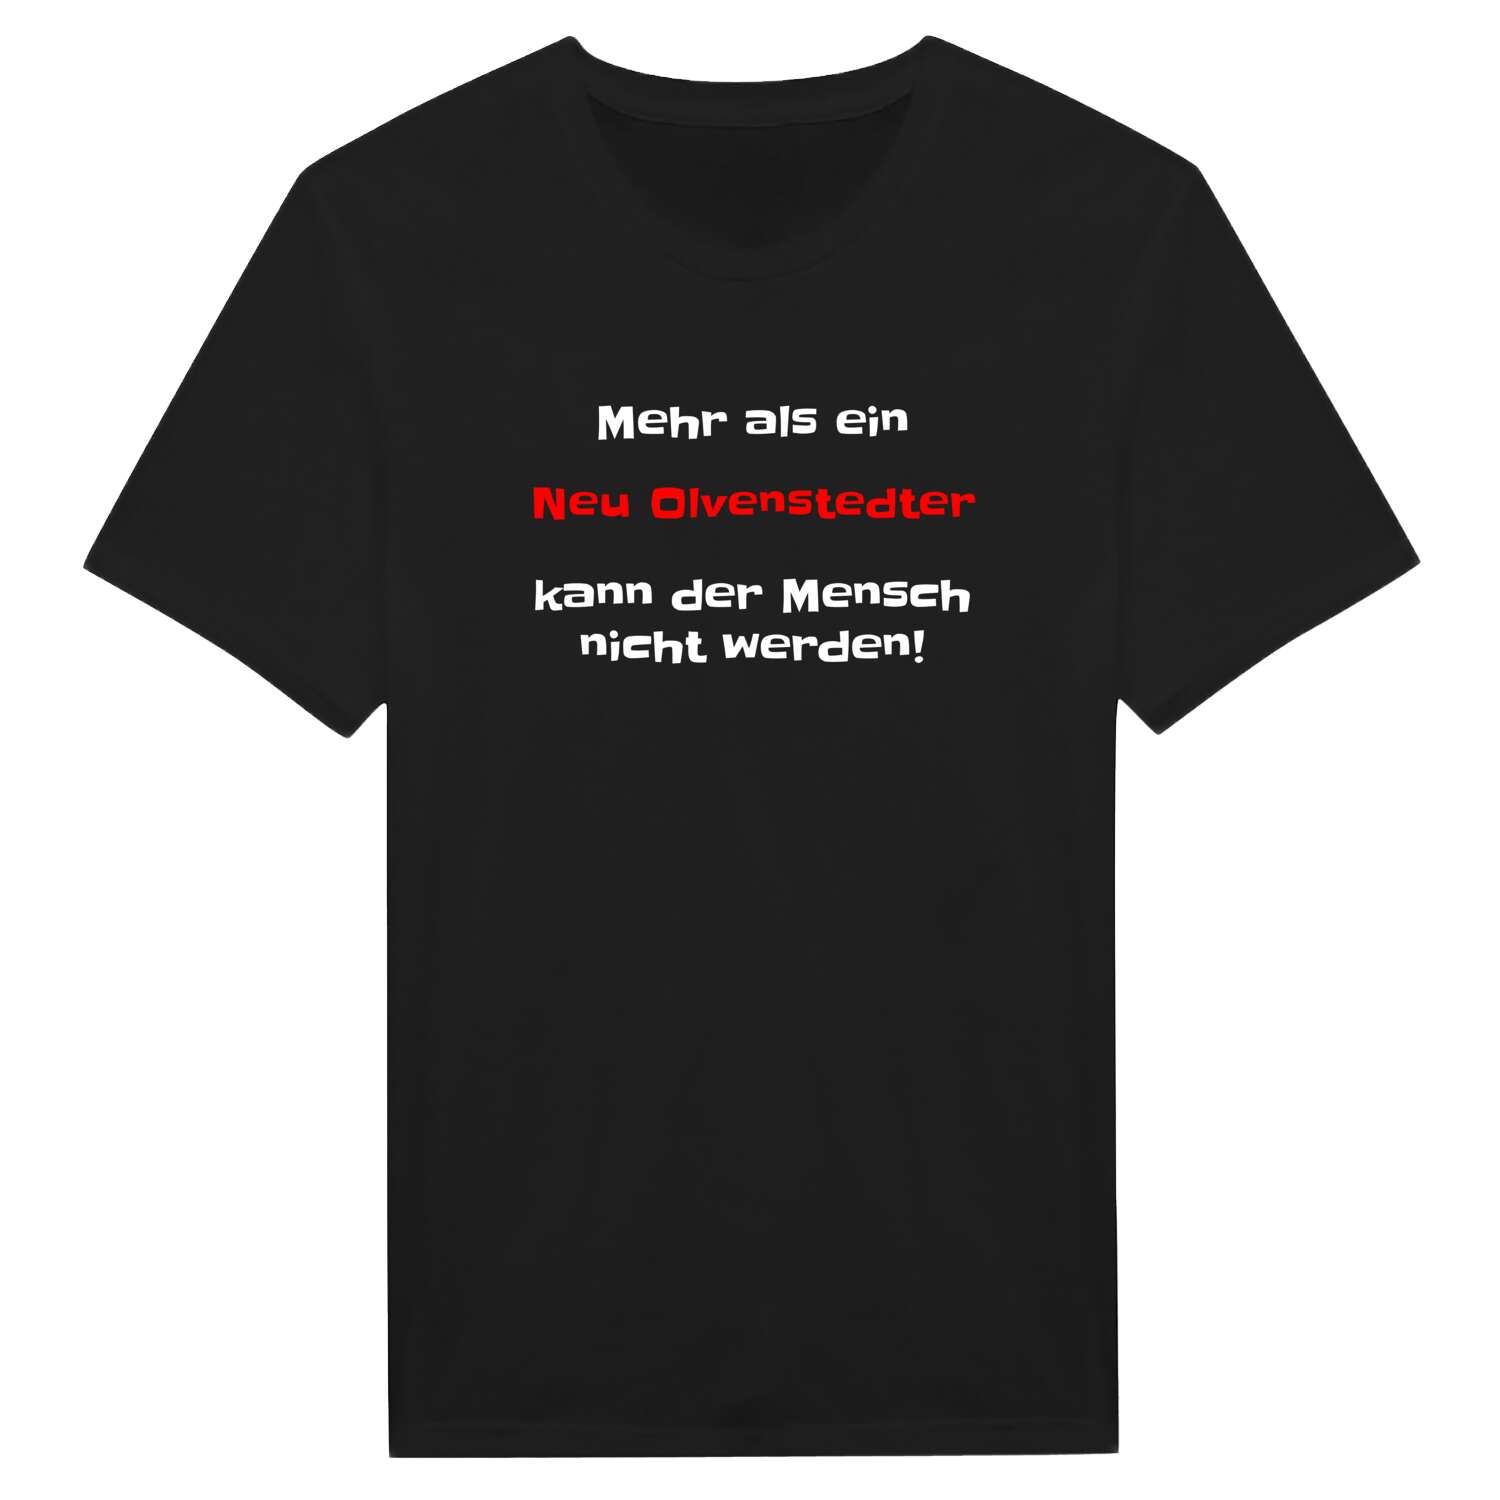 Neu Olvenstedt T-Shirt »Mehr als ein«